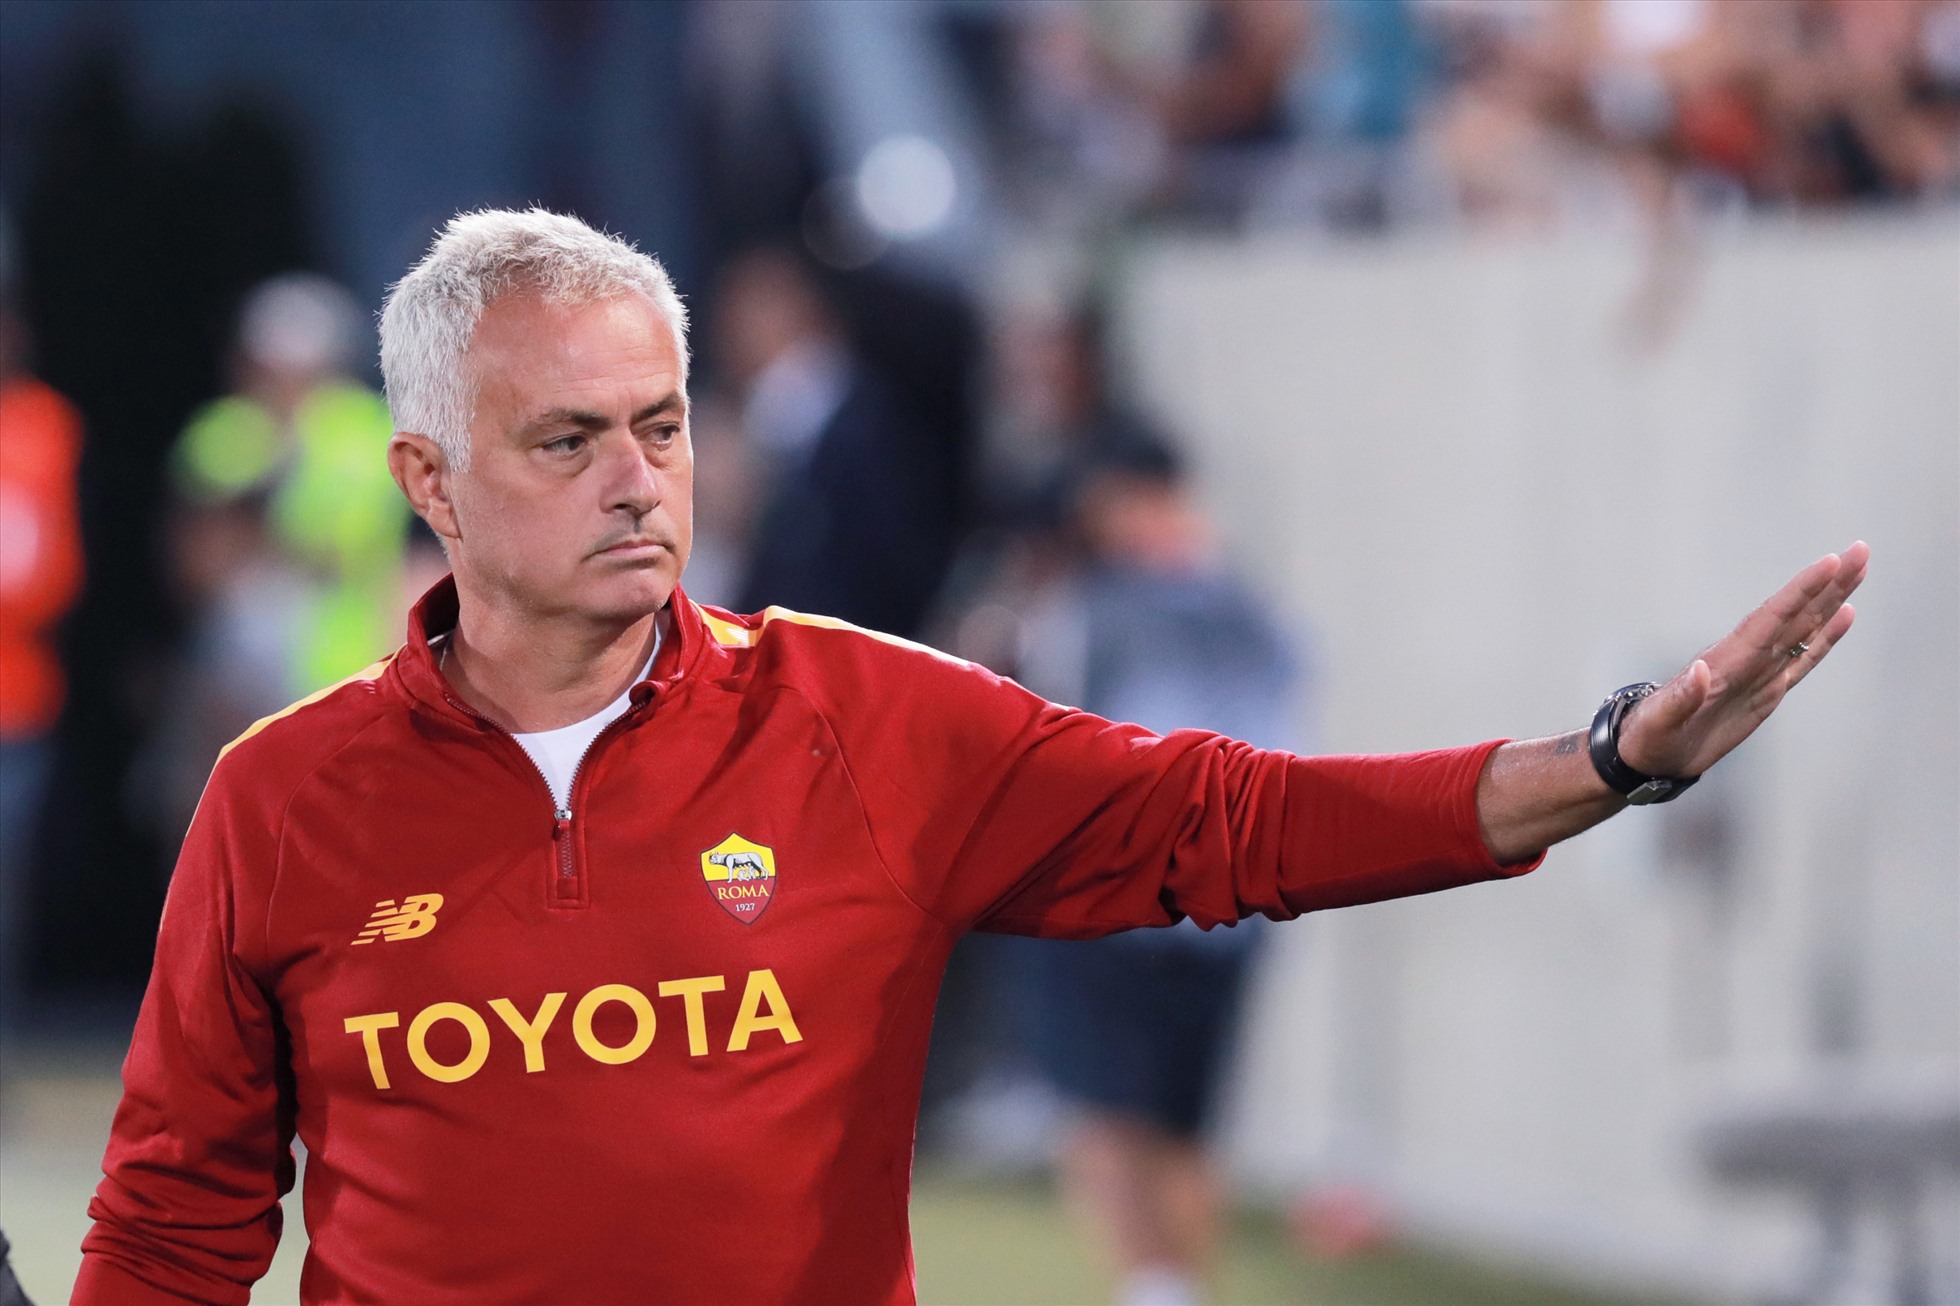 Liệu AS Roma có “chia sẻ” Mourinho với đội tuyển Bồ Đào Nha? Ảnh: AS Roma